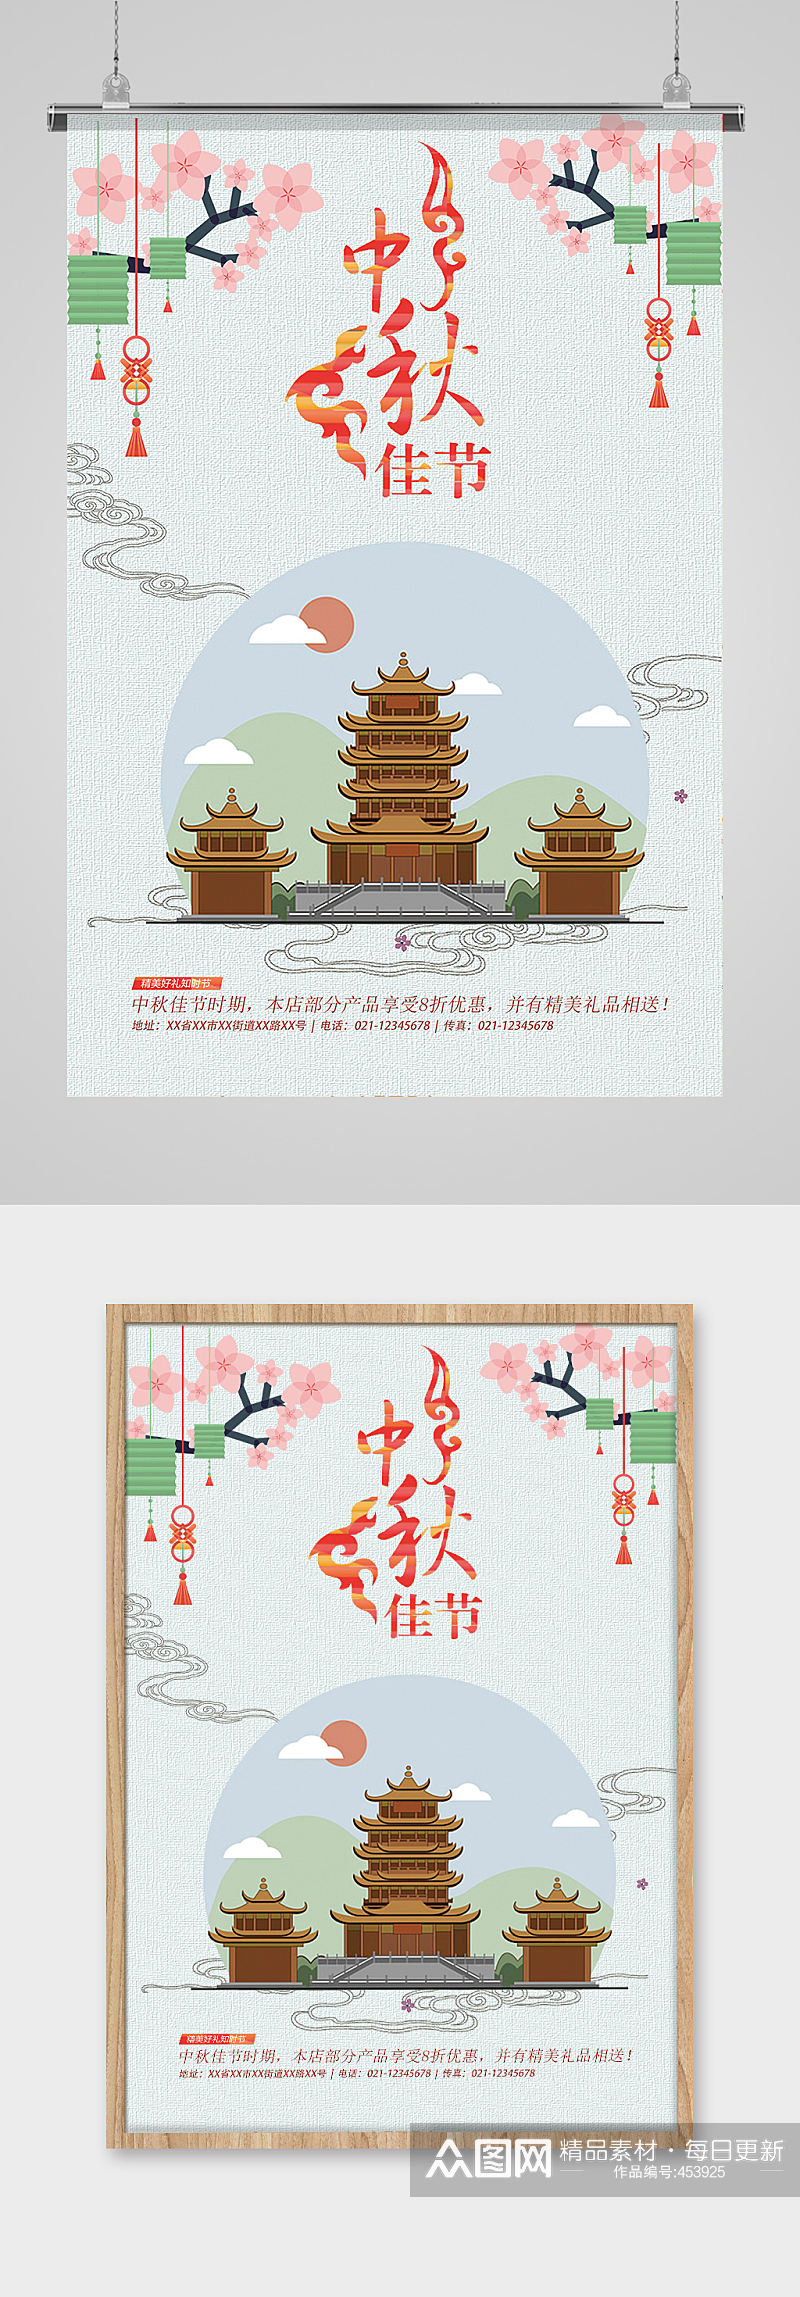 中秋佳节促销海报设计素材